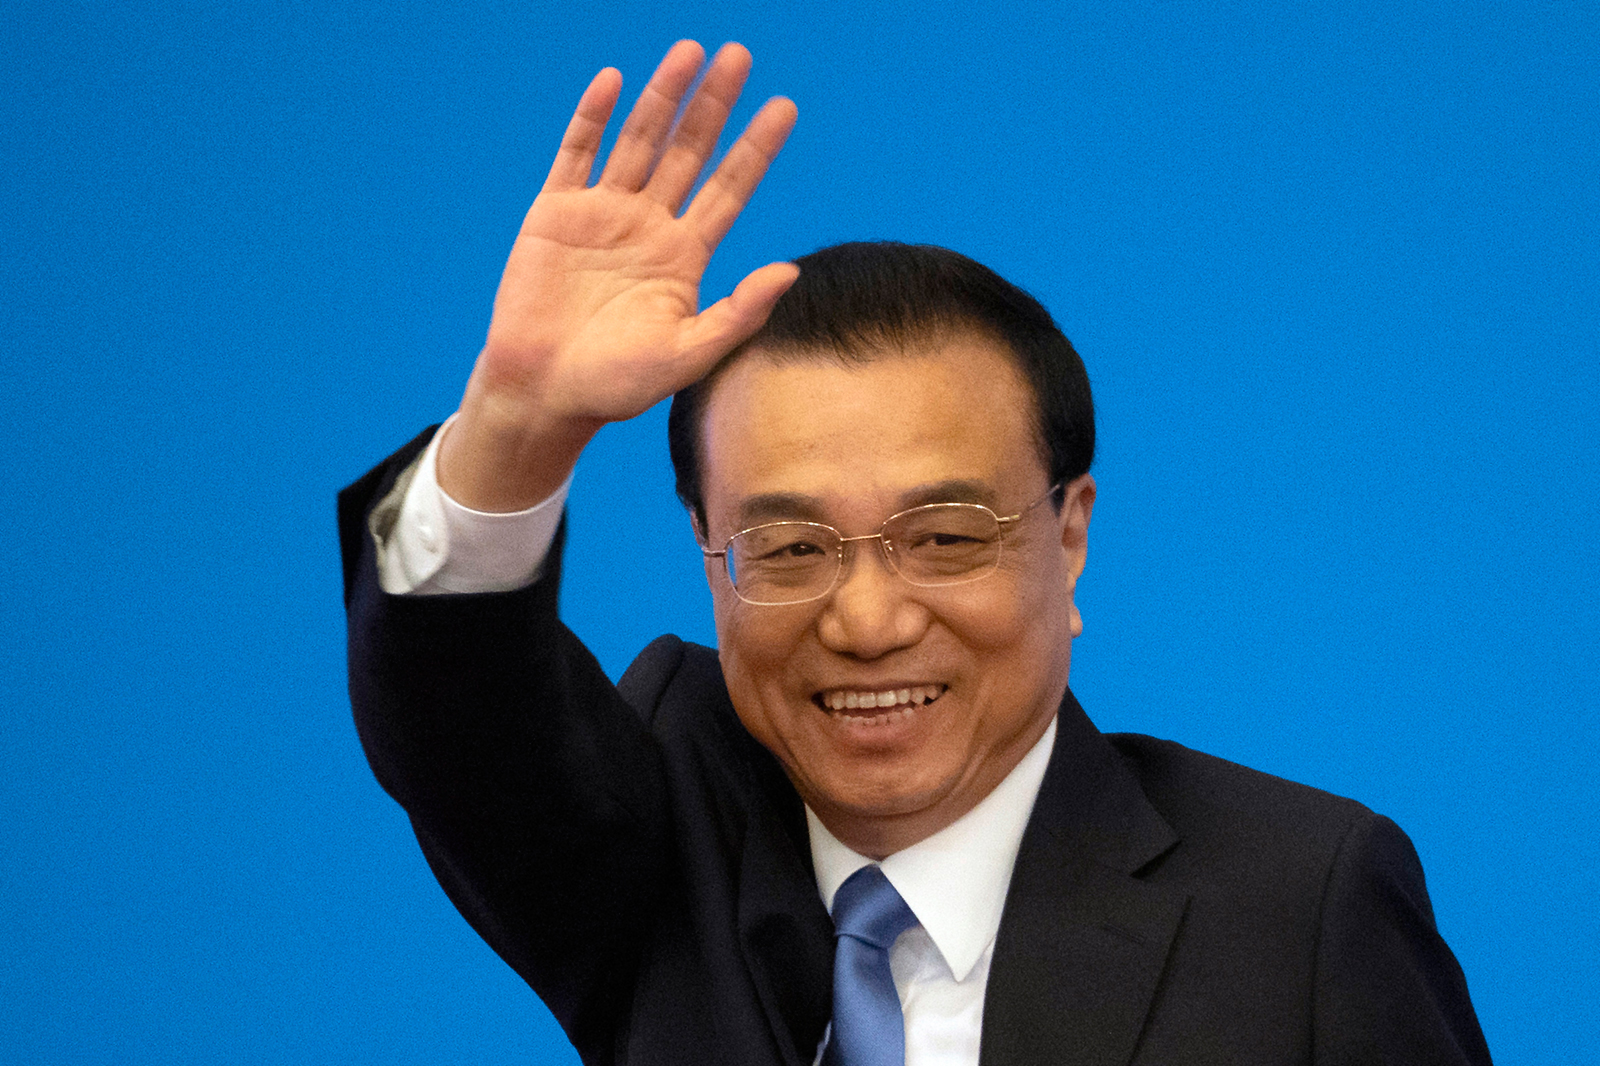 وفاة رئيس الوزراء الصيني السابق لي كه تشيانغ بأزمة قلبية